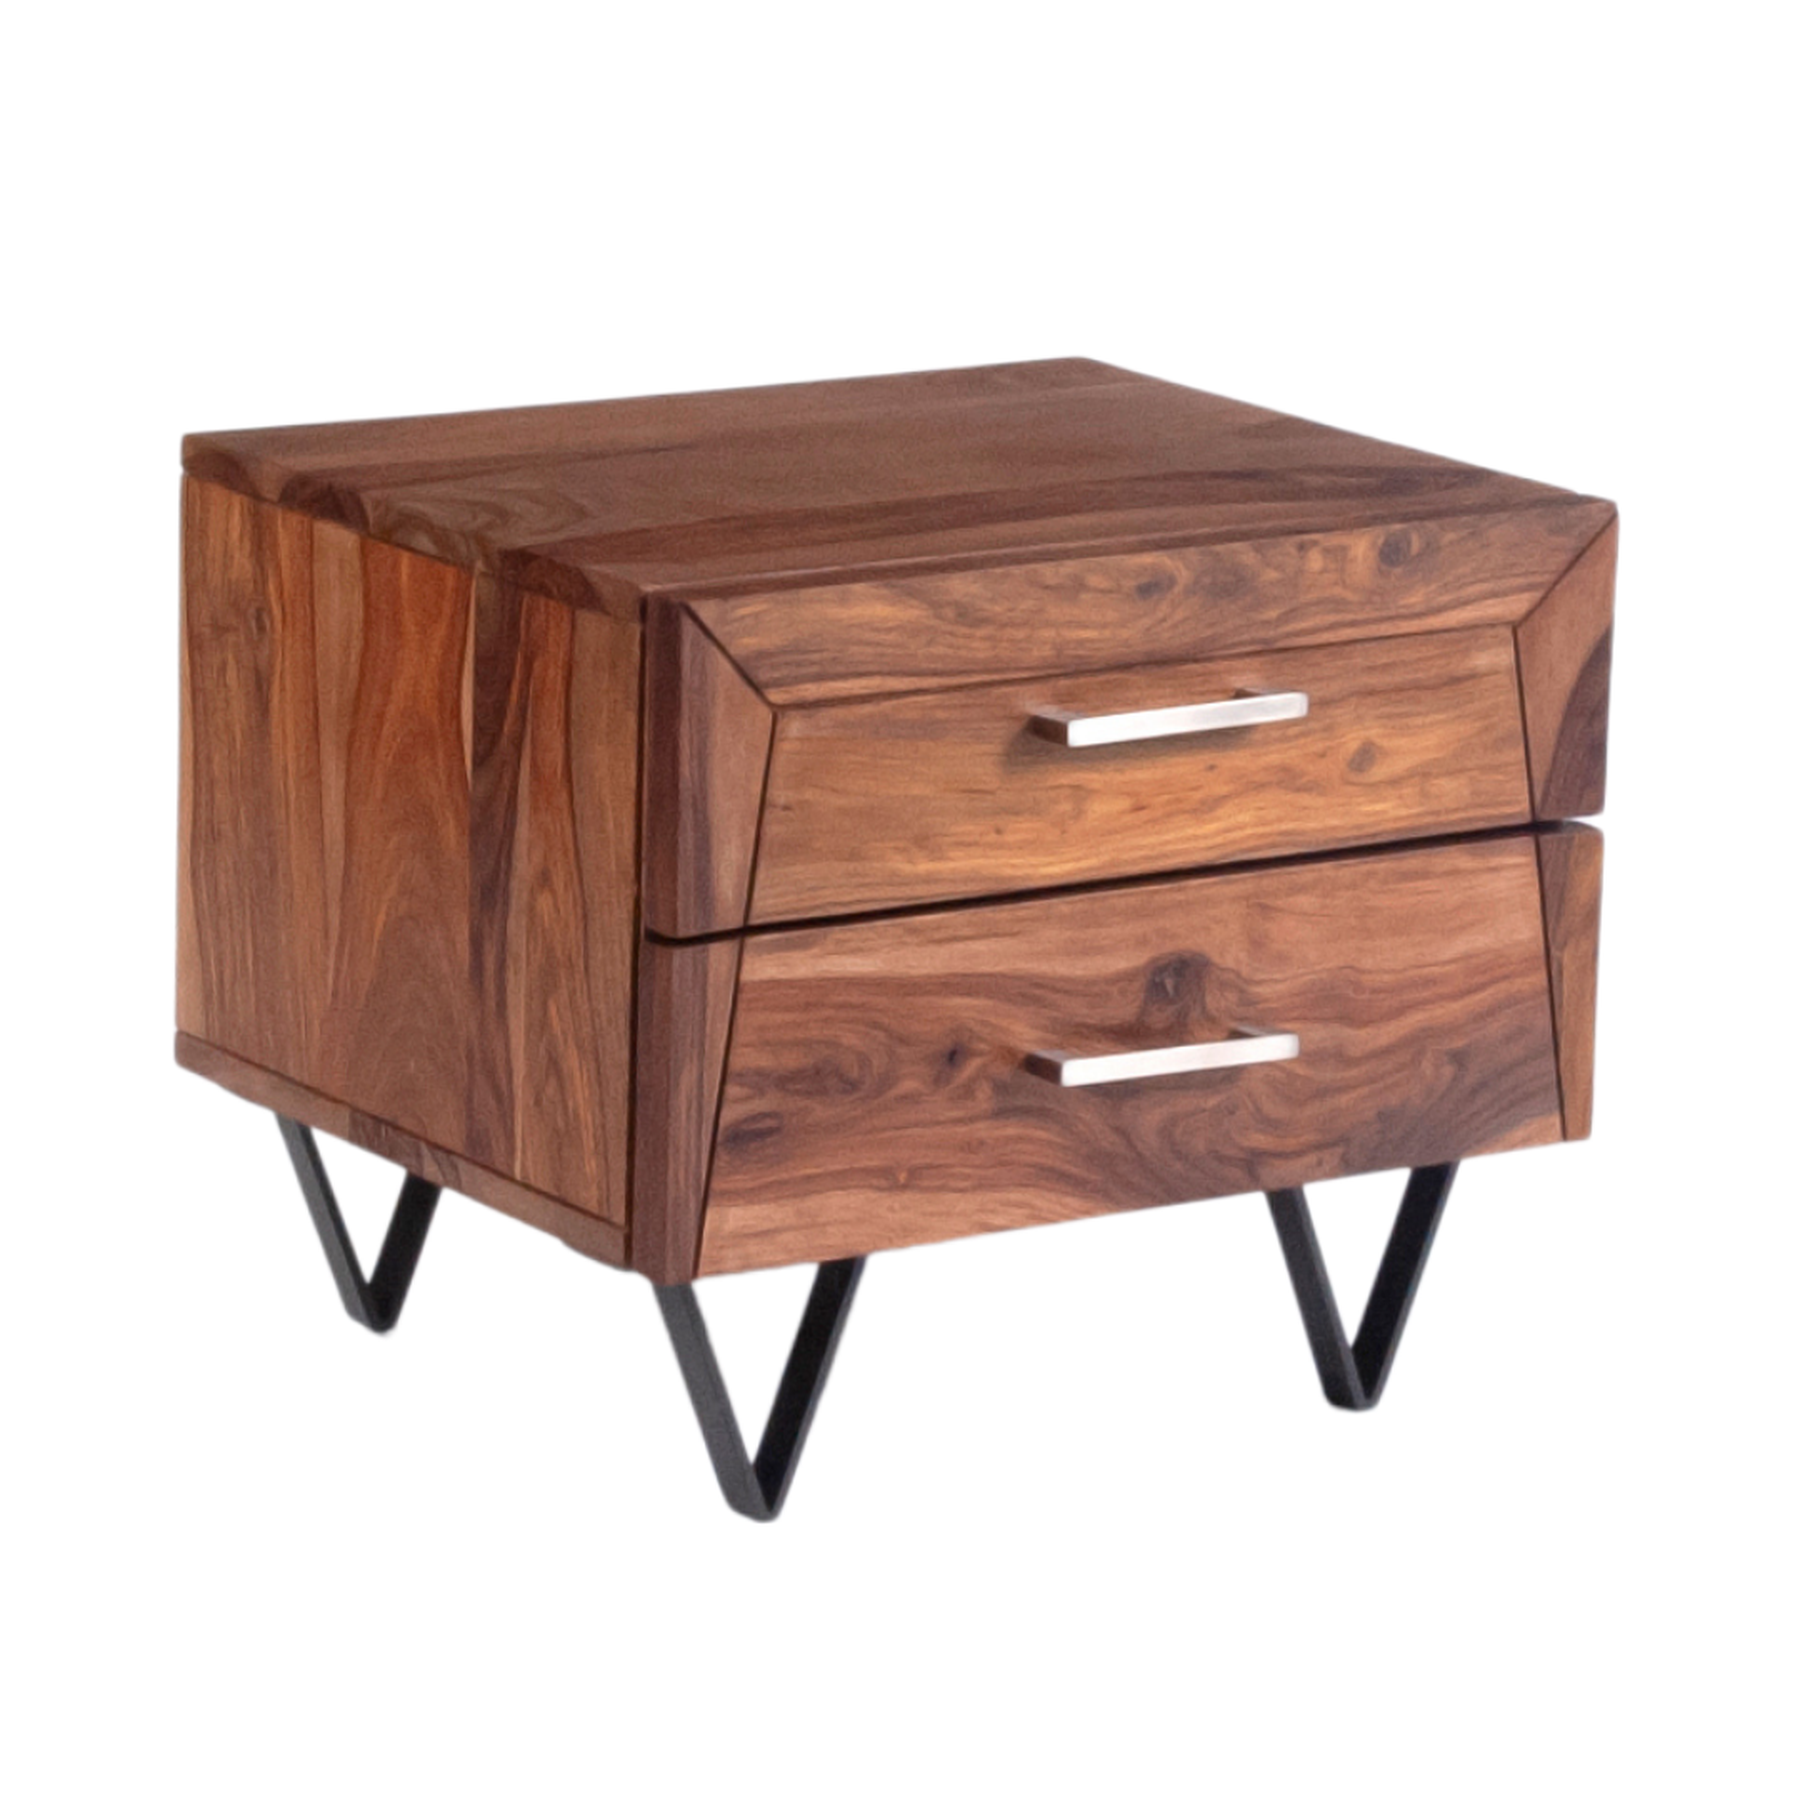 Table de chevet | Table de chevet en bois avec 2 tiroirs et poignées, table d'appoint pour chambre/salon